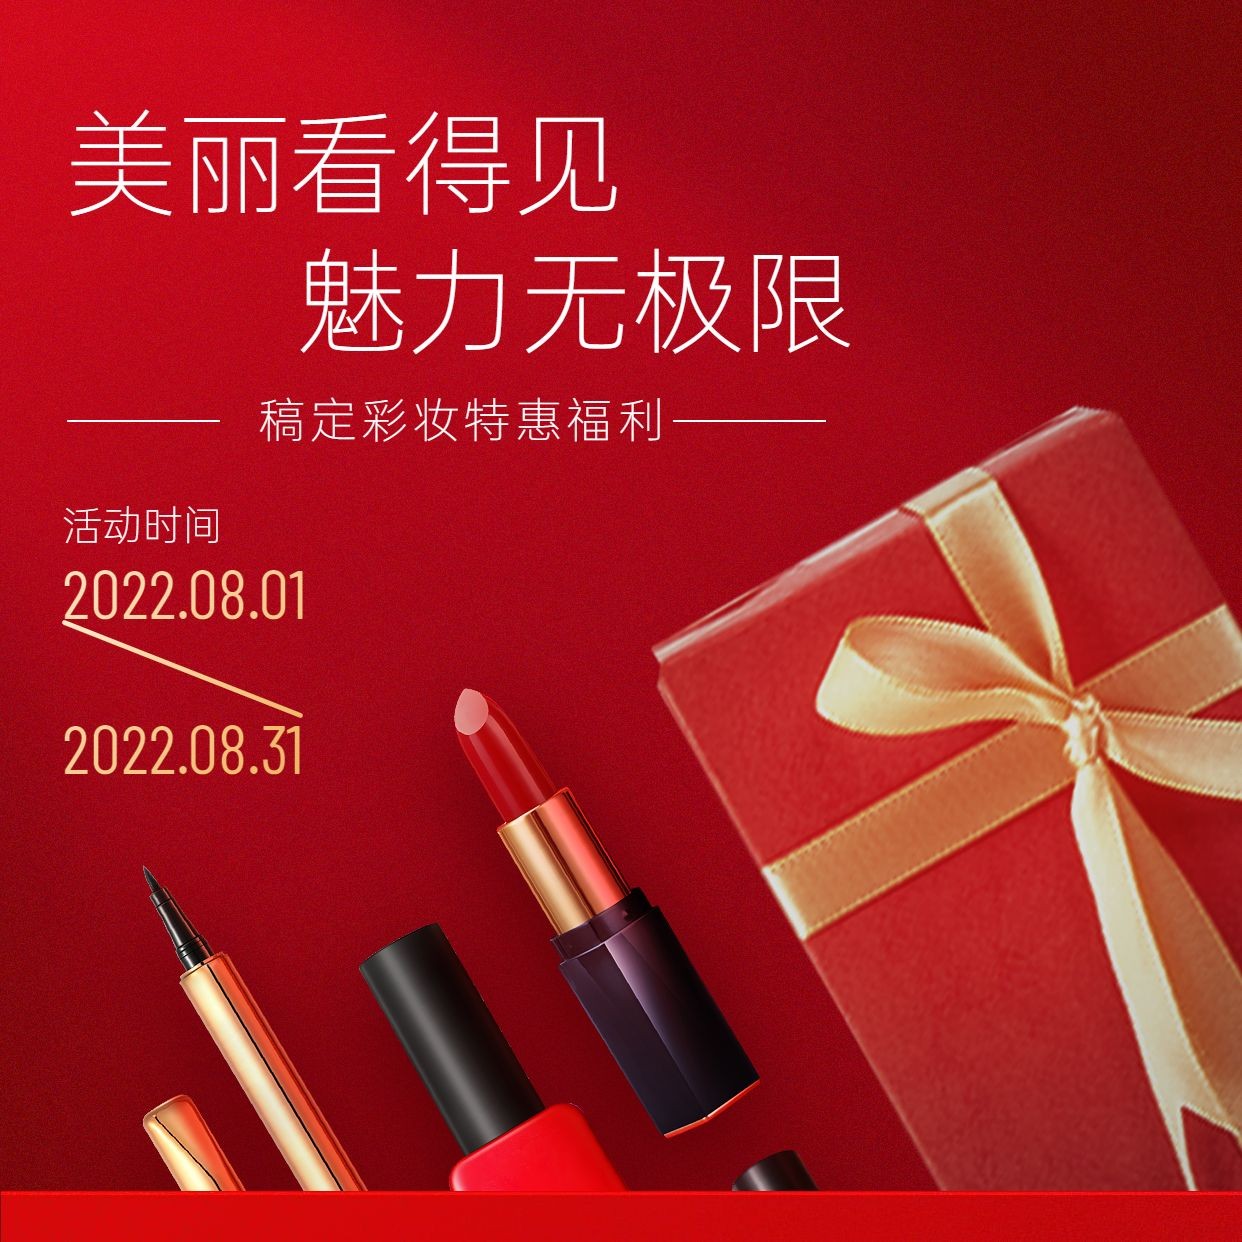 微商美容美妆彩妆产品营销方形海报